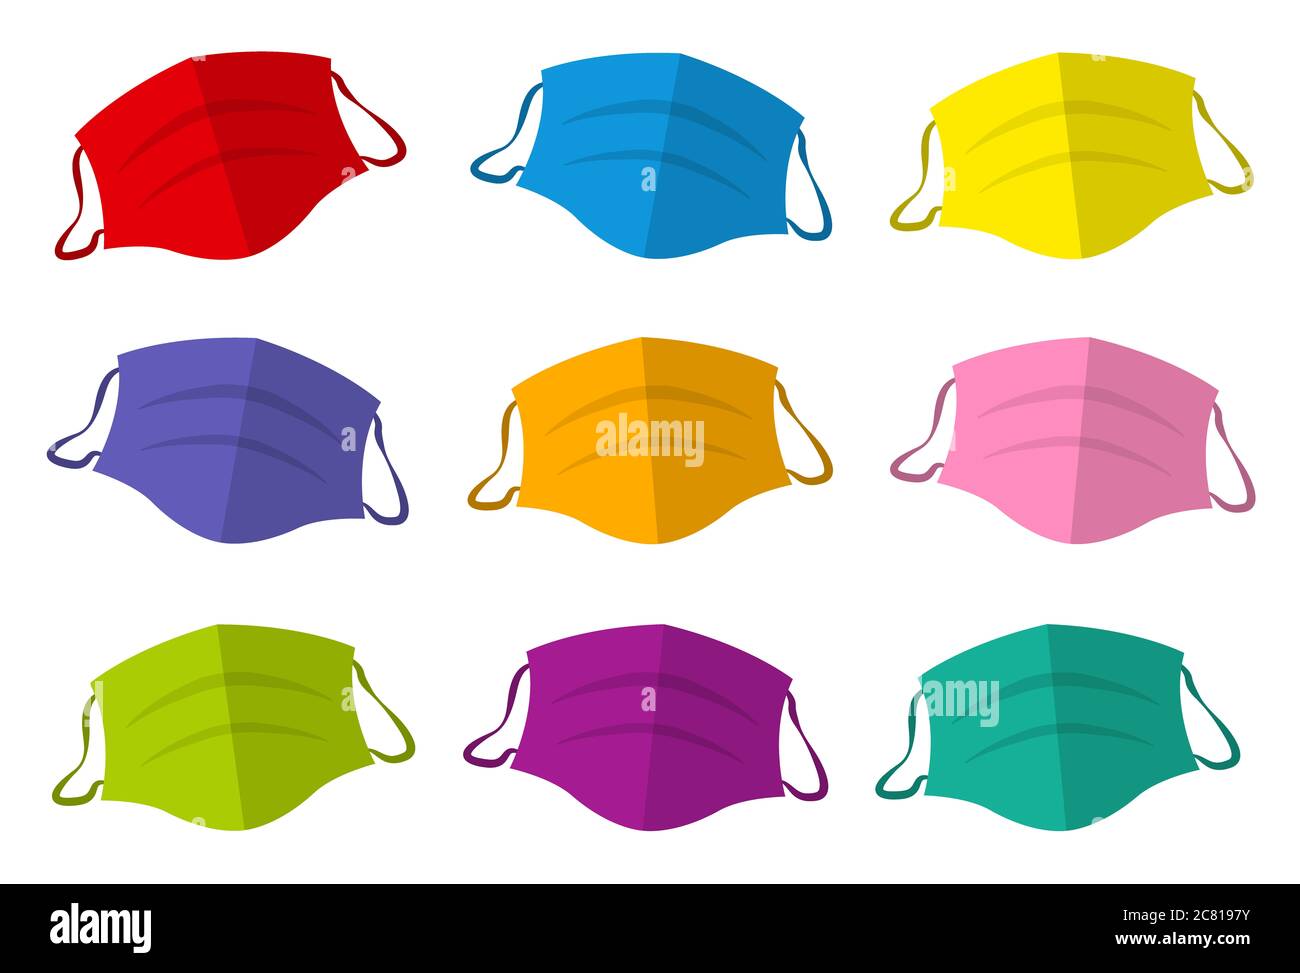 Masques protecteurs colorés, collection de masques médicaux colorés - illustration sur fond blanc. Banque D'Images